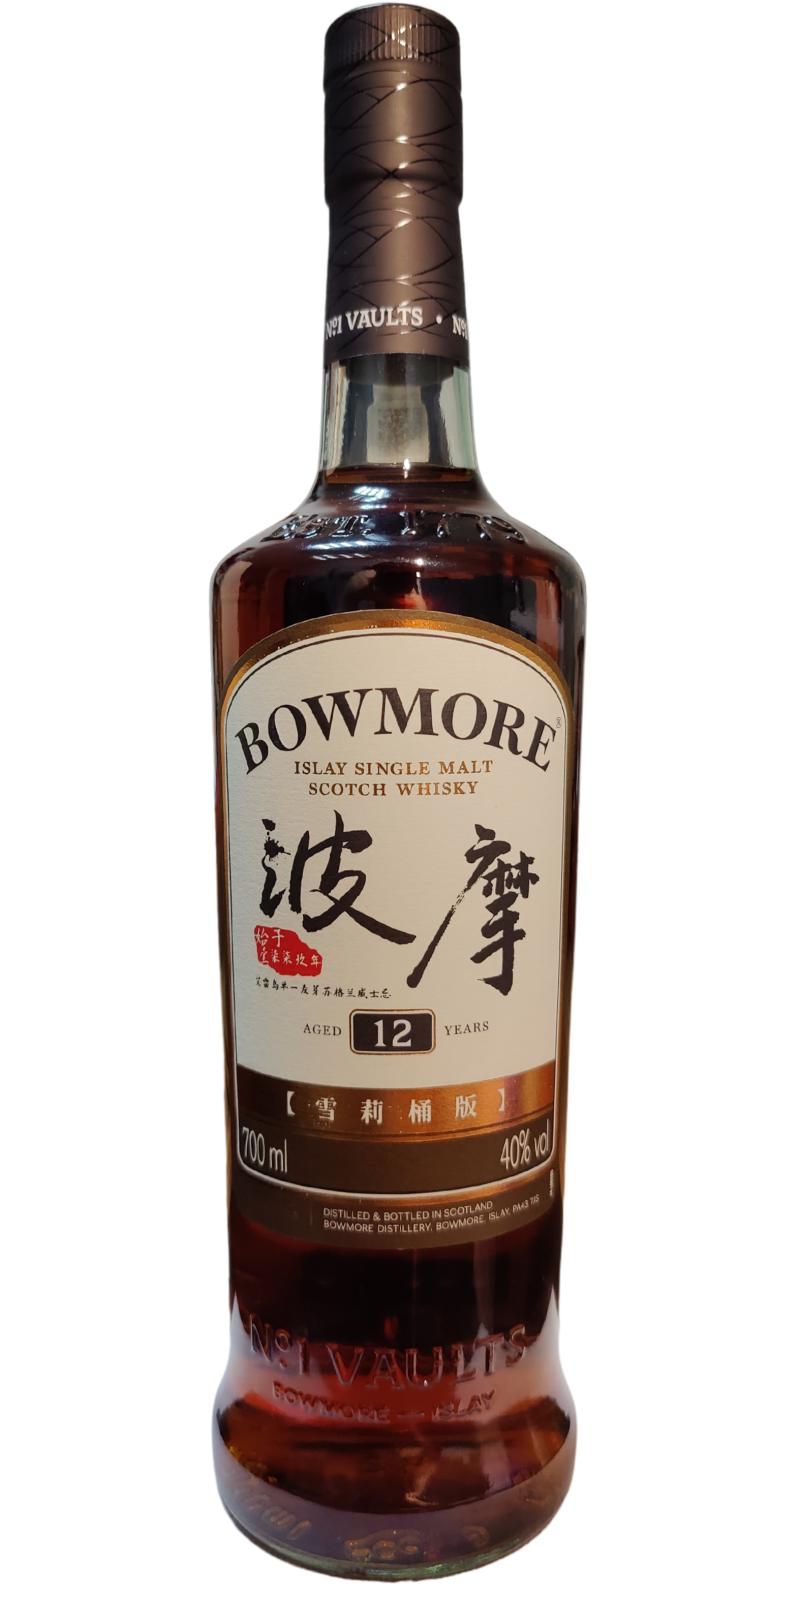 Bowmore 12yo Sherry Finish Bourbon Cask & Sherry Oak 40% 700ml